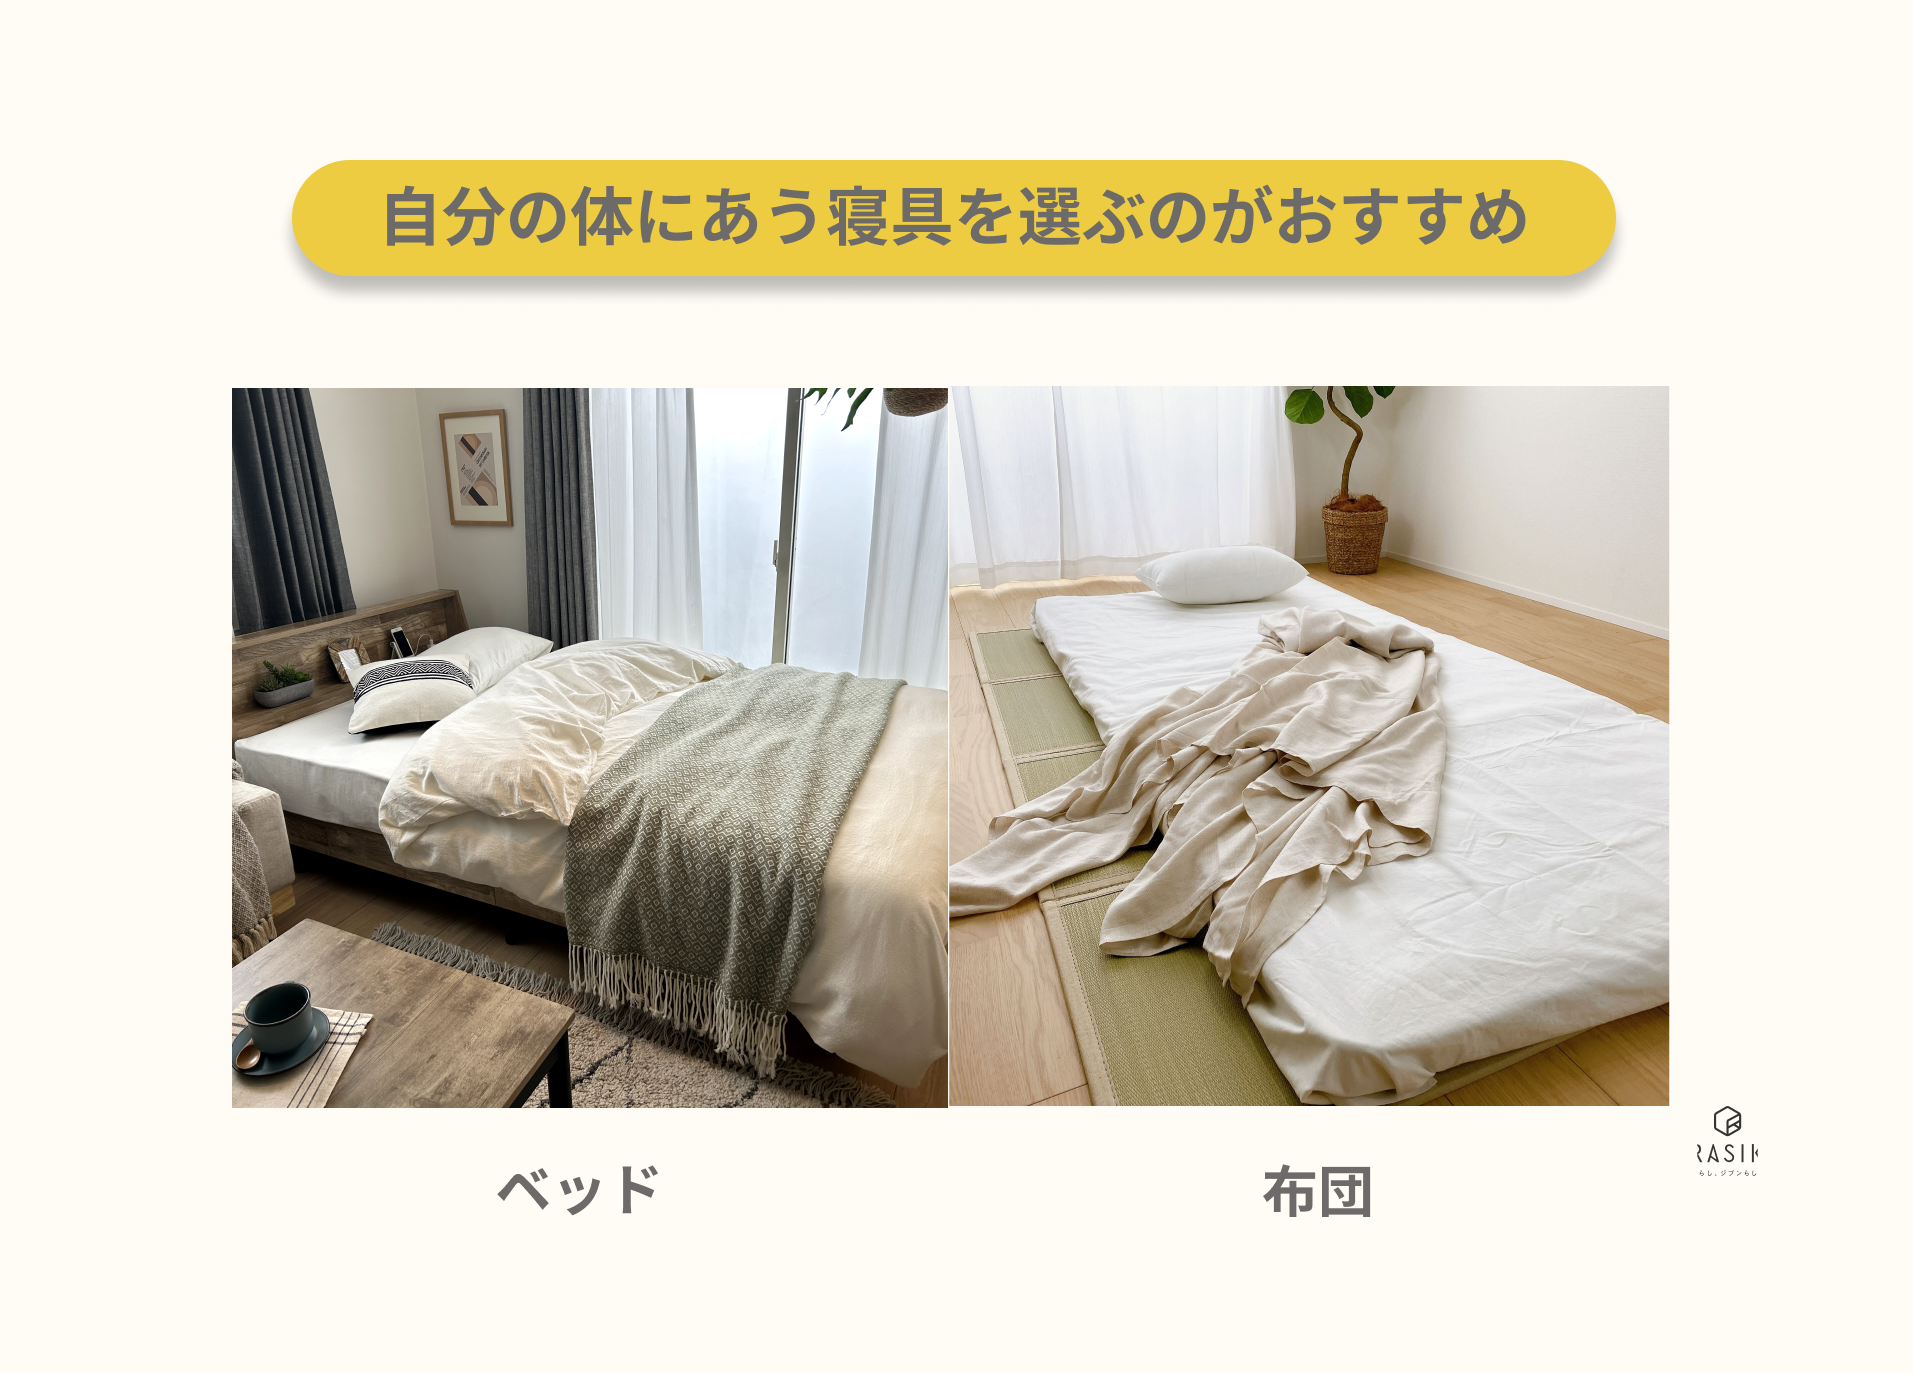 ベッドと布団を比較した画像